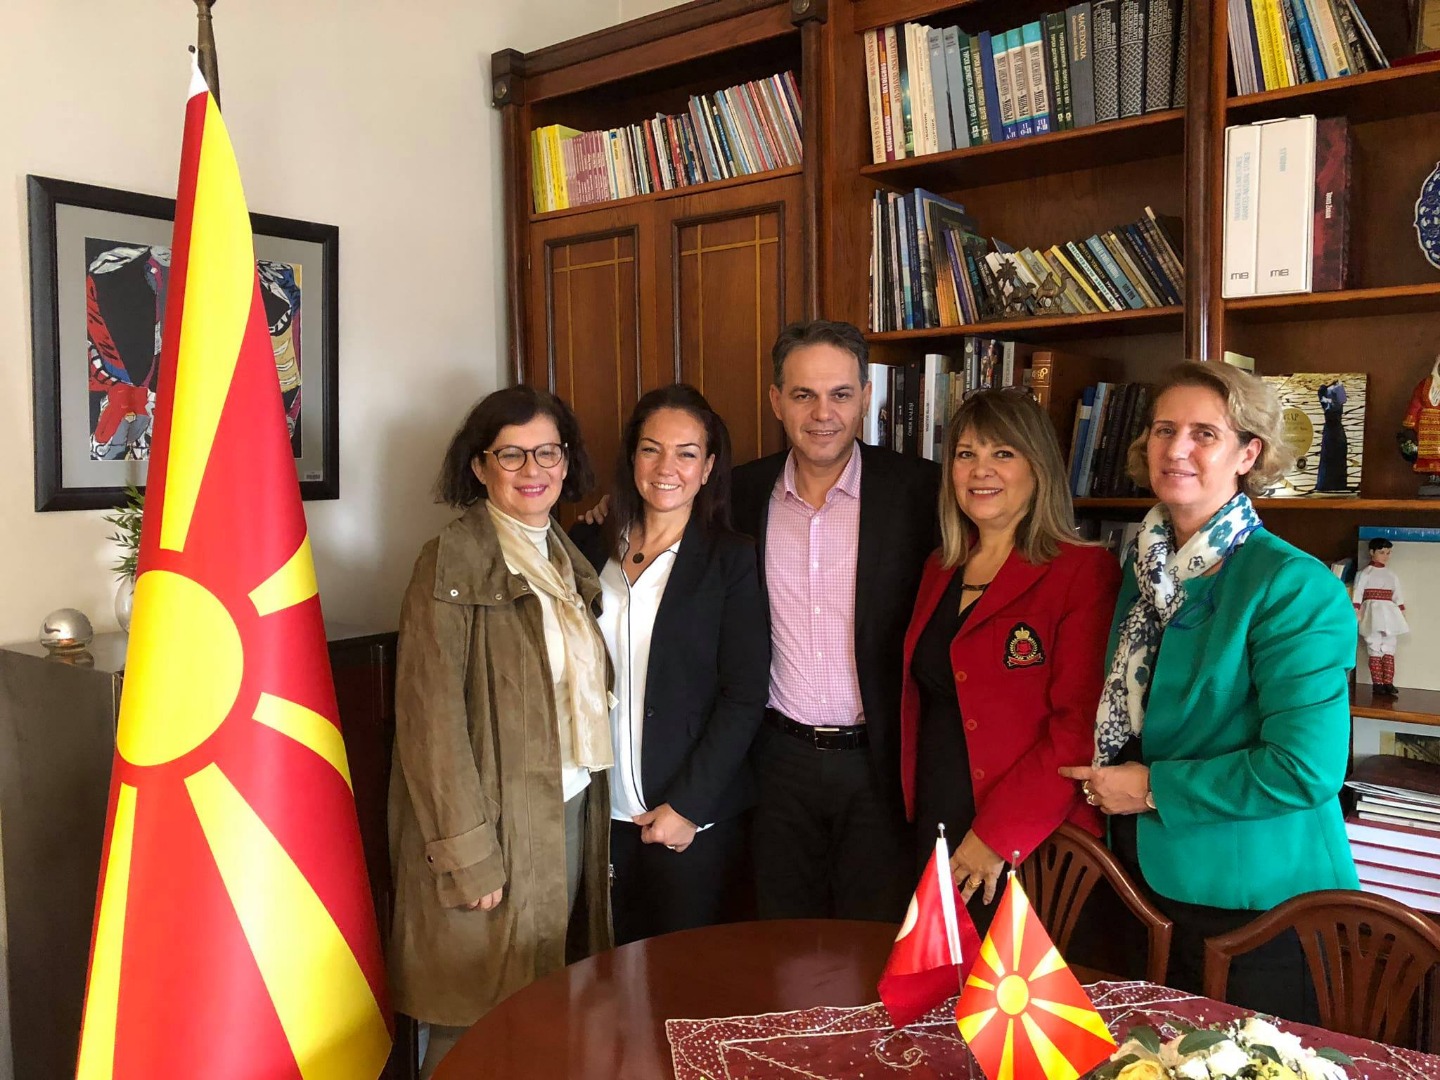 Göreve yeni gelen Makedonya Başkonsolosu Sn. Aleksandra HRISTOV'a yeni görev tebriği ziyaretinde bulunduk. 